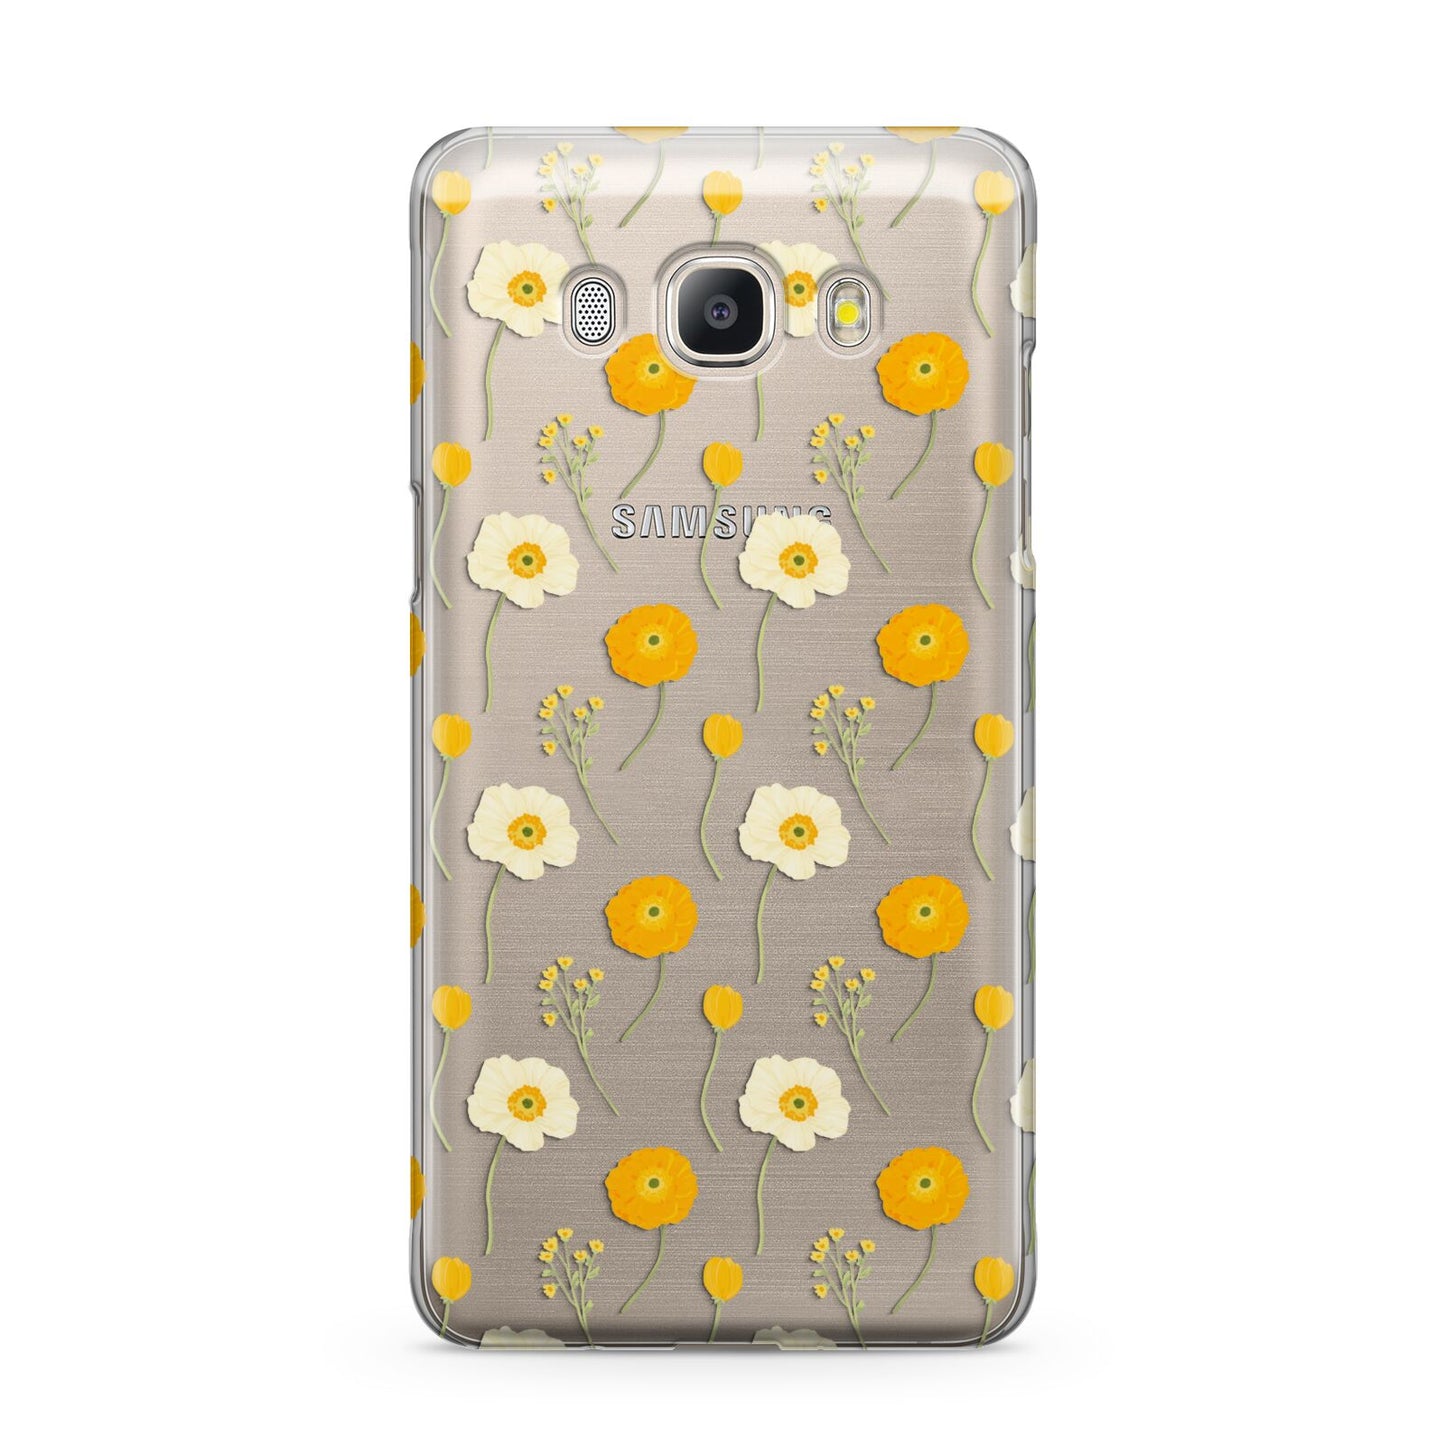 Wild Floral Samsung Galaxy J5 2016 Case